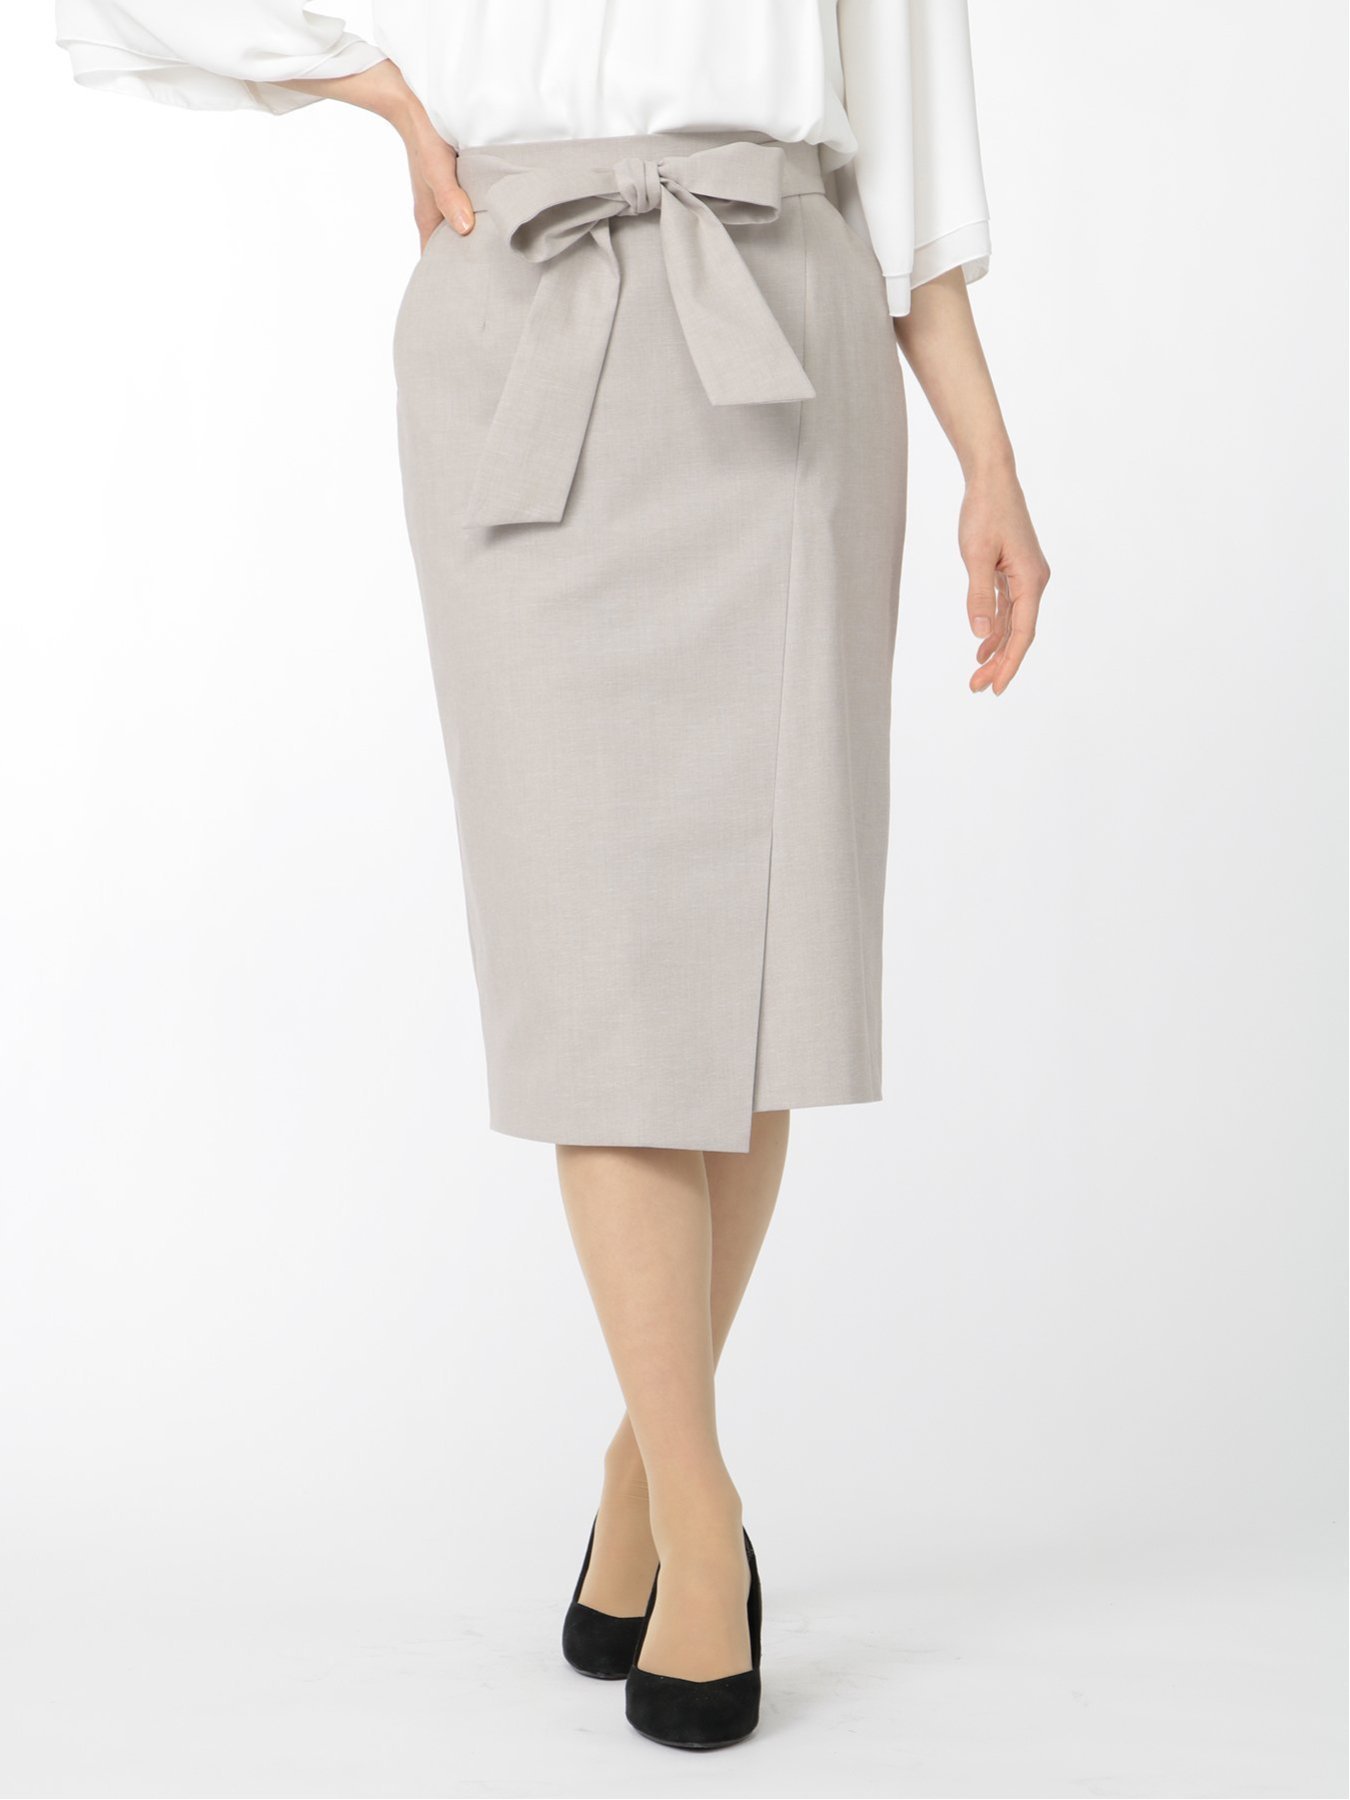 TAKA-Q（タカキュー）綿麻シャーク セミタイトスカート ベージュ(セットアップ可能)エムエフエディトリアルレディース/m.f.editorial:Women綿麻シャークセットアップセミタイトスカートベージュ■素材特徴シャリ感のあるリネン混のシャークスキンを使用しています。サラッと軽い着心地で盛夏まで着用可能。無地見えする控えめな織り柄で、さりげない表情があります。伸びて洗えてシワになりにくい多機能な素材です。裏地は抗菌加工をほどこしたポリエステル素材です。■機能【ストレッチ】表地・裏地共に伸びて、長時間の着用もストレスフリー。【ウォッシャブル】ご家庭で手洗い可能。いつも清潔に着ていただけます。【イージーケア】洗濯後もシワが入りにくく、アイロンがけも簡単。■デザインラップ風に見えるデザインで上品なルックスに仕上げています。ウエストマークできる共生地のリボンベルトが付属しています。ポケット付きなので利便性にも優れています。■シルエットすっきりと見えるストレート（セミタイト）シルエットです。膝下丈なので幅広い年代の方に着ていただけます。ウエストサイドはゴム入りで着用ストレスを軽減しています。■コーディネートフィット感のある綺麗目トップスと合わせるのがおすすめです。セットアップで着ていただくと、着まわしのバリエーションが広がります。プライベートのお出掛けはもちろん、オフィスシーン、お子様の学校行事、セミフォーマルまで幅広く活躍してくれます。■セットアップアイテムは下記品番をご参照ください。・綿麻シャークセットアップカラーレス7分袖ジャケットベージュ120103063118237・綿麻シャークセットアップテーパードパンツベージュ:120113063118237フィット感:標準シーズン:夏展開カラー:ベージュ裏地:有り*アテンションタグ・洗濯ネームを御確認の上、着用又は取り扱い下さい。*光の当たる場所や高温多湿になる場所での保管は避けて下さい。*使用の有無に関わらず、経年劣化は進行いたしますのでご了承下さい。*こちらの商品はセット販売ではなく、単品のみの販売となります。型番：120063063118237-33-o FH8019【採寸】サイズ着丈ウエストヒップS66cm62cm92cmM67cm66cm96cmL68cm70cm100cmXL69cm74cm104cm※裾上げ等のお直しが必要な場合は,納品書をご持参していただき最寄のタカキューグループ店舗までお持ちください.お直し代金,お直しにかかる期間は店舗によって異なる場合がございますので,詳しくは店舗スタッフまでお問い合わせください.商品のサイズについて【商品詳細】中国素材：本体:ポリエステル52%本体:コットン42%本体:リネン6%裏地:ポリエステル100%サイズ：S、M、L、XL※クリーニングの可否・洗濯方法等お手入れにつきましては、商品本体の洗濯表示タグをご確認願います。※画面上と実物では多少色具合が異なって見える場合もございます。ご了承ください。商品のカラーについて 【予約商品について】 ※「先行予約販売中」「予約販売中」をご注文の際は予約商品についてをご確認ください。TAKA-Q（タカキュー）綿麻シャーク セミタイトスカート ベージュ(セットアップ可能)エムエフエディトリアルレディース/m.f.editorial:Women綿麻シャークセットアップセミタイトスカートベージュ■素材特徴シャリ感のあるリネン混のシャークスキンを使用しています。サラッと軽い着心地で盛夏まで着用可能。無地見えする控えめな織り柄で、さりげない表情があります。伸びて洗えてシワになりにくい多機能な素材です。裏地は抗菌加工をほどこしたポリエステル素材です。■機能【ストレッチ】表地・裏地共に伸びて、長時間の着用もストレスフリー。【ウォッシャブル】ご家庭で手洗い可能。いつも清潔に着ていただけます。【イージーケア】洗濯後もシワが入りにくく、アイロンがけも簡単。■デザインラップ風に見えるデザインで上品なルックスに仕上げています。ウエストマークできる共生地のリボンベルトが付属しています。ポケット付きなので利便性にも優れています。■シルエットすっきりと見えるストレート（セミタイト）シルエットです。膝下丈なので幅広い年代の方に着ていただけます。ウエストサイドはゴム入りで着用ストレスを軽減しています。■コーディネートフィット感のある綺麗目トップスと合わせるのがおすすめです。セットアップで着ていただくと、着まわしのバリエーションが広がります。プライベートのお出掛けはもちろん、オフィスシーン、お子様の学校行事、セミフォーマルまで幅広く活躍してくれます。■セットアップアイテムは下記品番をご参照ください。・綿麻シャークセットアップカラーレス7分袖ジャケットベージュ120103063118237・綿麻シャークセットアップテーパードパンツベージュ:120113063118237フィット感:標準シーズン:夏展開カラー:ベージュ裏地:有り*アテンションタグ・洗濯ネームを御確認の上、着用又は取り扱い下さい。*光の当たる場所や高温多湿になる場所での保管は避けて下さい。*使用の有無に関わらず、経年劣化は進行いたしますのでご了承下さい。*こちらの商品はセット販売ではなく、単品のみの販売となります。型番：120063063118237-33-o FH8019【採寸】サイズ着丈ウエストヒップS66cm62cm92cmM67cm66cm96cmL68cm70cm100cmXL69cm74cm104cm※裾上げ等のお直しが必要な場合は,納品書をご持参していただき最寄のタカキューグループ店舗までお持ちください.お直し代金,お直しにかかる期間は店舗によって異なる場合がございますので,詳しくは店舗スタッフまでお問い合わせください.商品のサイズについて【商品詳細】中国素材：本体:ポリエステル52%本体:コットン42%本体:リネン6%裏地:ポリエステル100%サイズ：S、M、L、XL※クリーニングの可否・洗濯方法等お手入れにつきましては、商品本体の洗濯表示タグをご確認願います。※画面上と実物では多少色具合が異なって見える場合もございます。ご了承ください。商品のカラーについて 【予約商品について】 ※「先行予約販売中」「予約販売中」をご注文の際は予約商品についてをご確認ください。■重要なお知らせ※ 当店では、ギフト配送サービス及びラッピングサービスを行っておりません。ご注文者様とお届け先が違う場合でも、タグ（値札）付「納品書 兼 返品連絡票」同梱の状態でお送り致しますのでご了承ください。 ラッピング・ギフト配送について※ 2点以上ご購入の場合、全ての商品が揃い次第一括でのお届けとなります。お届け予定日の異なる商品をお買い上げの場合はご注意下さい。お急ぎの商品がございましたら分けてご購入いただきますようお願い致します。発送について ※ 買い物カートに入れるだけでは在庫確保されませんのでお早めに購入手続きをしてください。当店では在庫を複数サイトで共有しているため、同時にご注文があった場合、売切れとなってしまう事がございます。お手数ですが、ご注文後に当店からお送りする「ご注文内容の確認メール」をご確認ください。ご注文の確定について ※ Rakuten Fashionの商品ページに記載しているメーカー希望小売価格は、楽天市場「商品価格ナビ」に登録されている価格に準じています。 商品の価格についてTAKA-QTAKA-Qのスーツスカートスーツ・フォーマルご注文・お届けについて発送ガイドラッピンググッズ3,980円以上送料無料ご利用ガイド